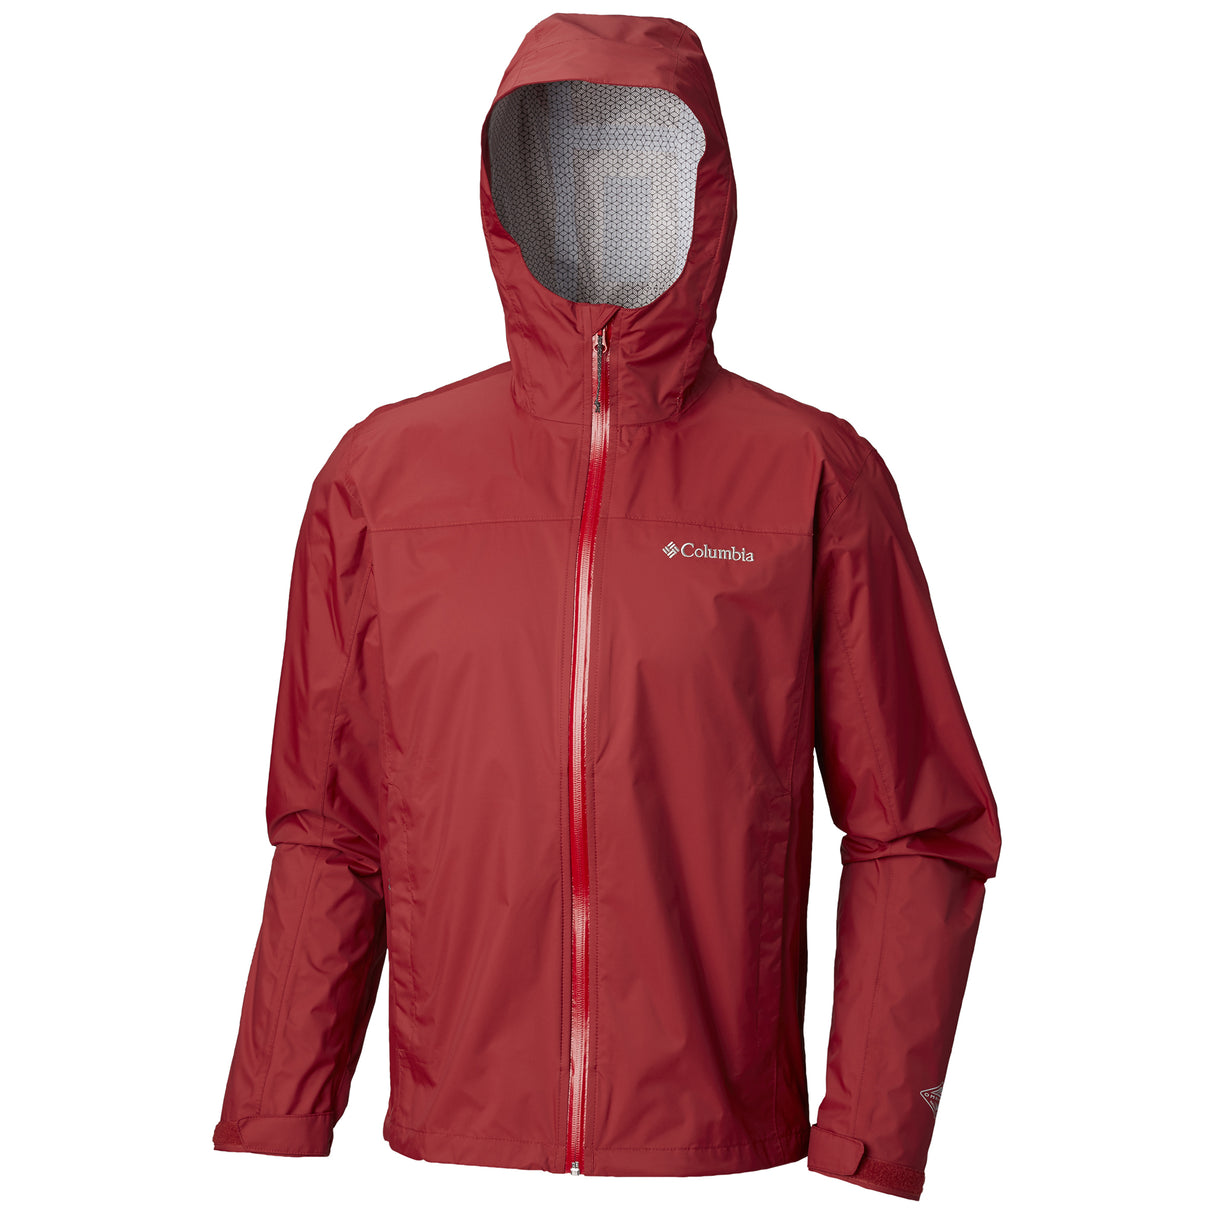 Columbia manteau de pluie rouge EvaPOURation homme